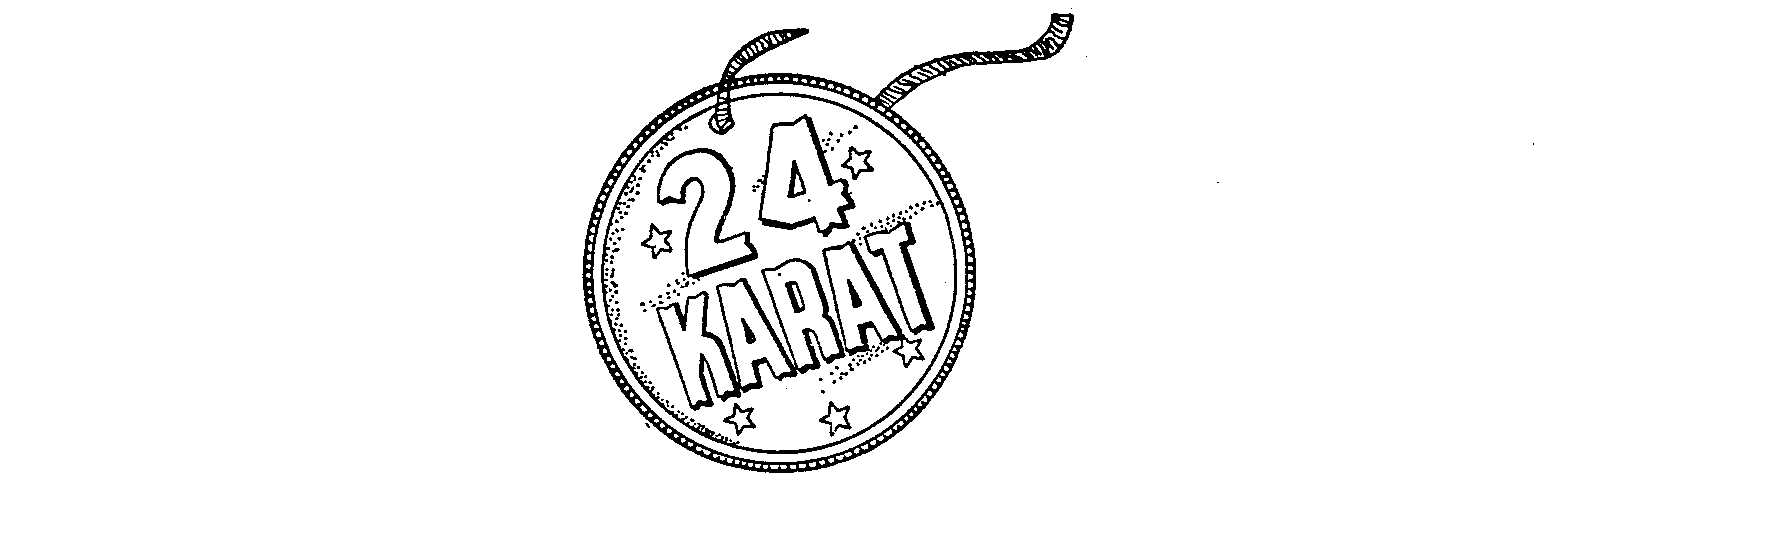 24 KARAT